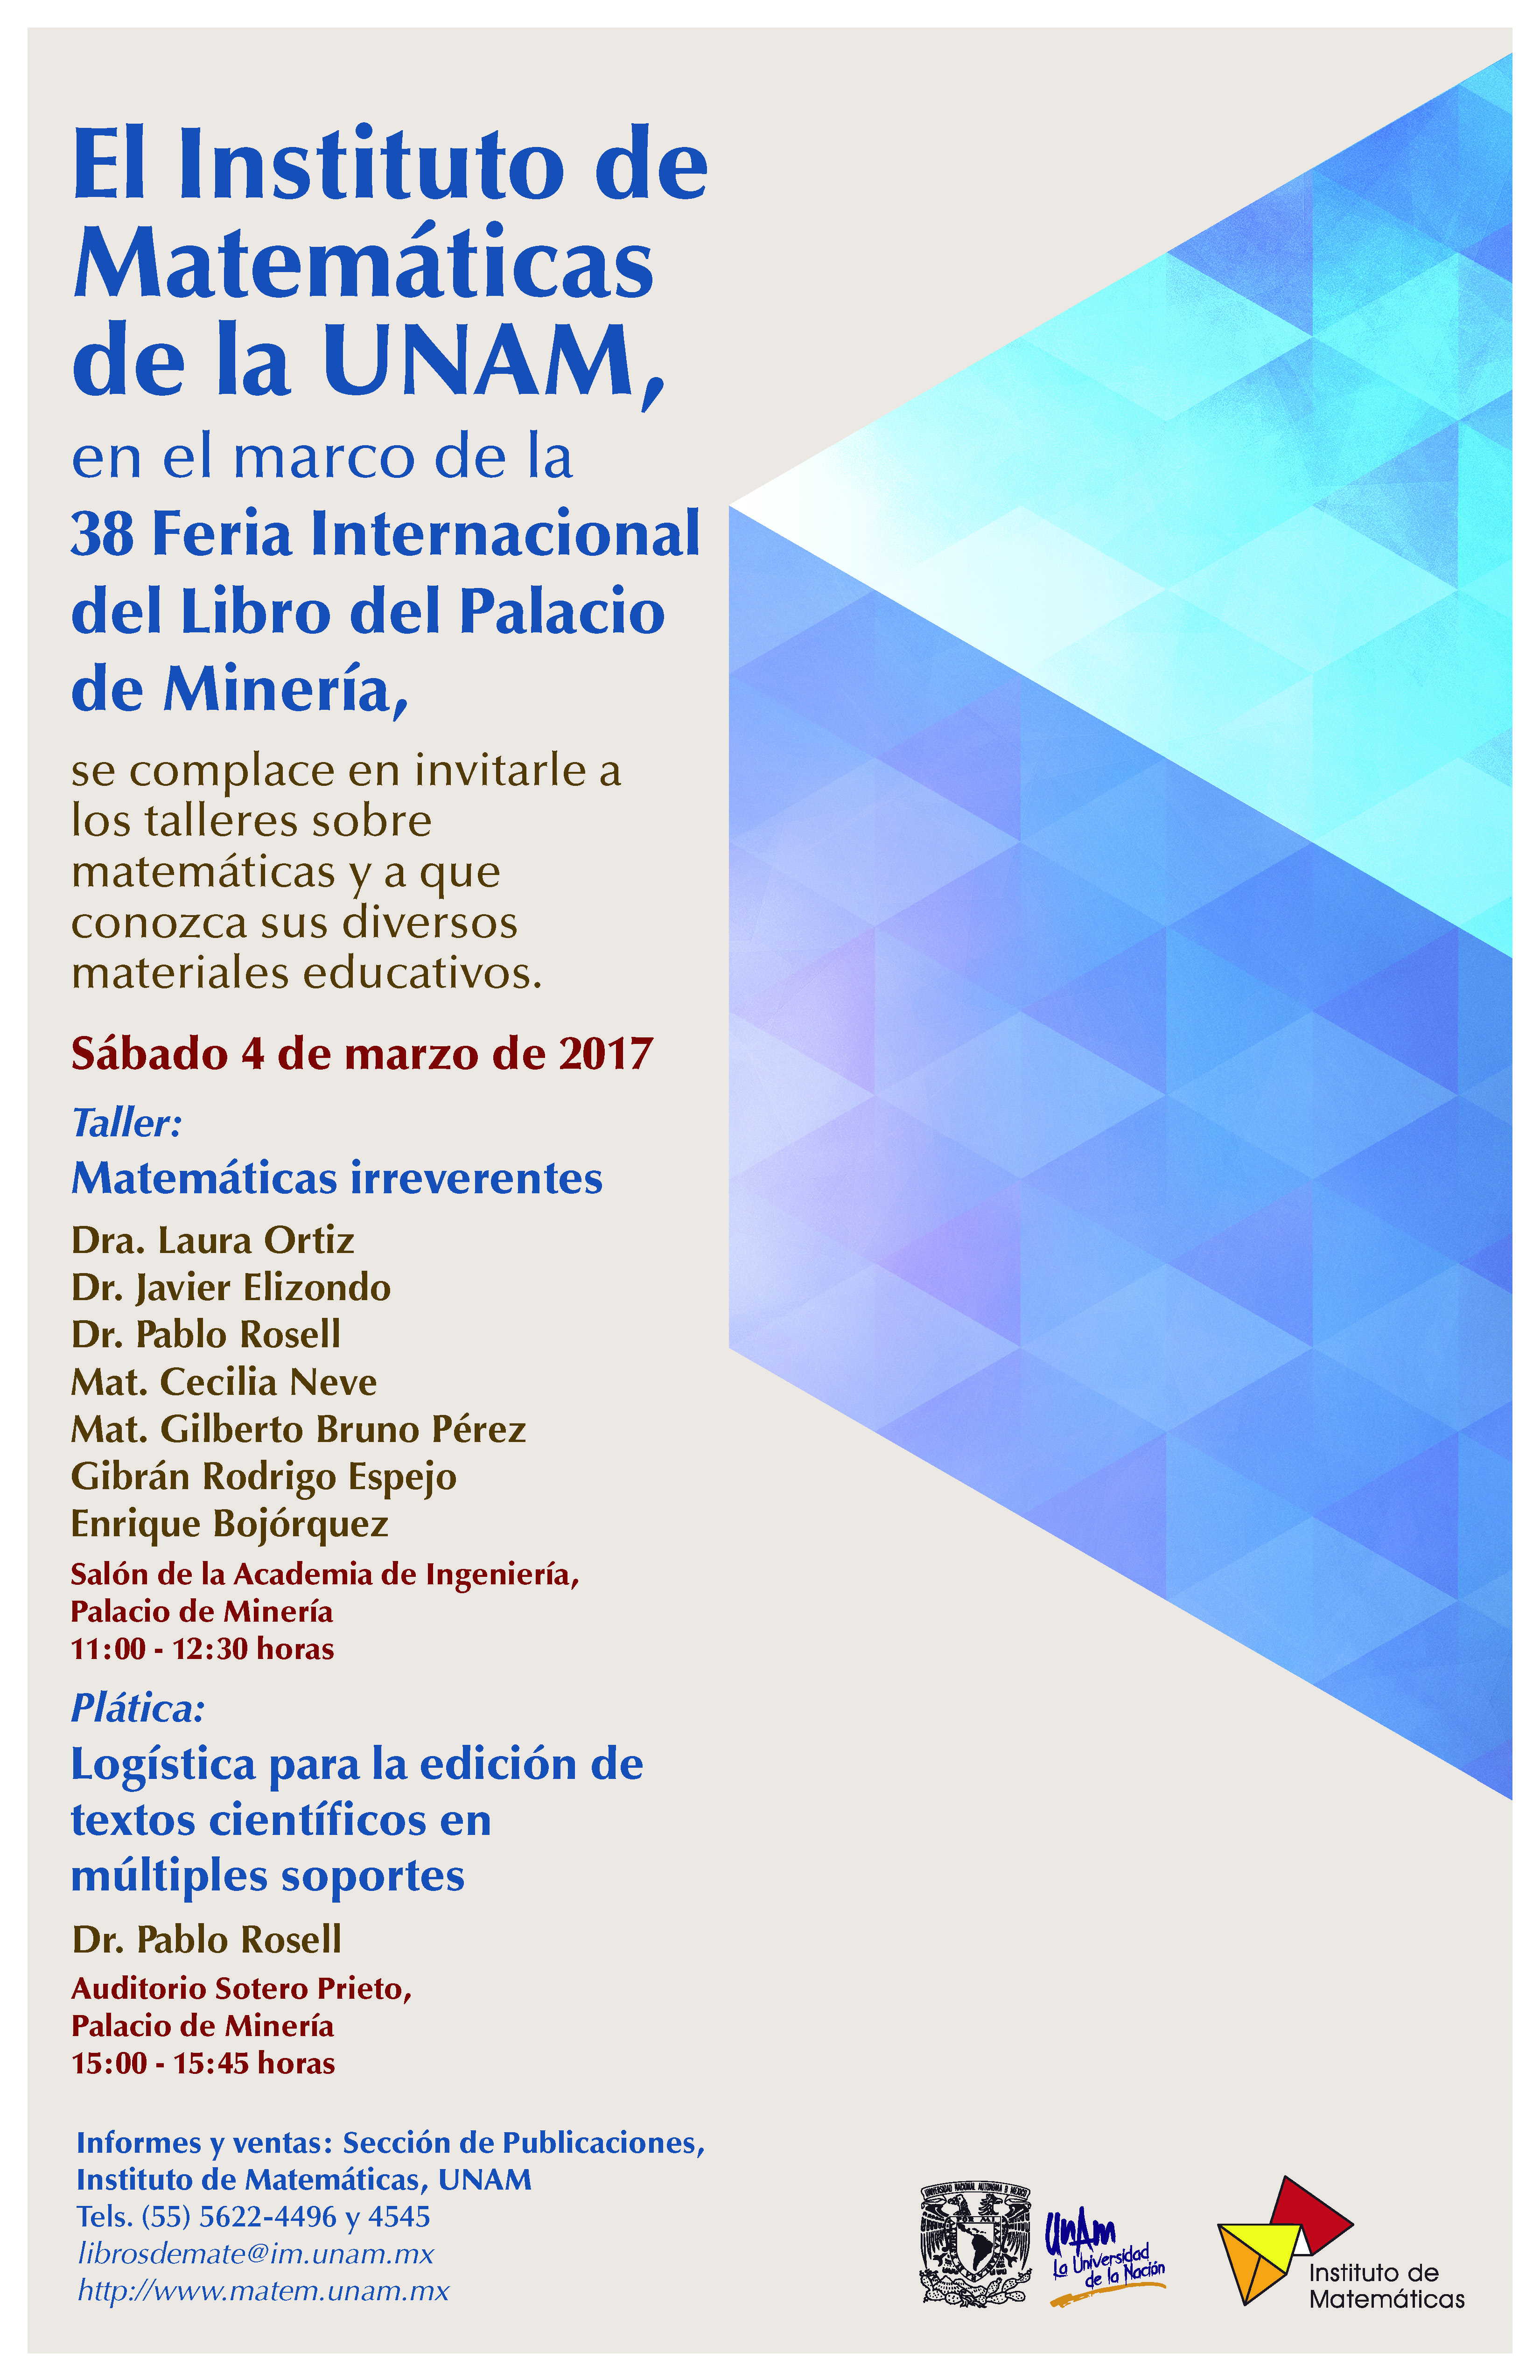 En marzo: ¡Matemáticas y muchos libros en la Feria Internacional del Libro de Palacio de Minería! 